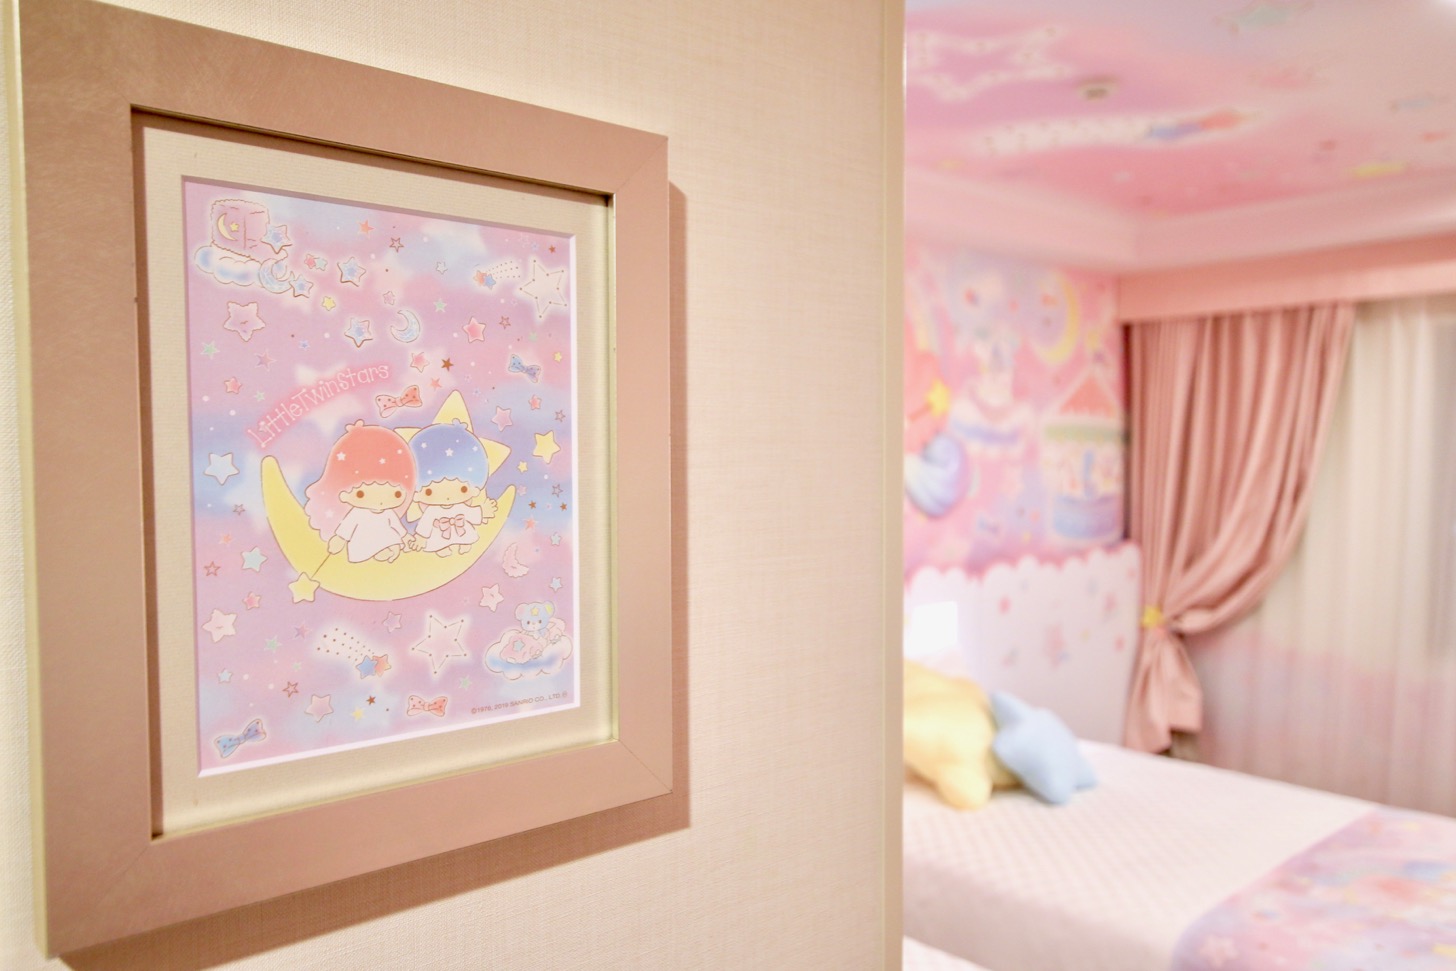 京王プラザホテル多摩 リトルツインスターズルーム キキ＆ララのイラストが飾られてます